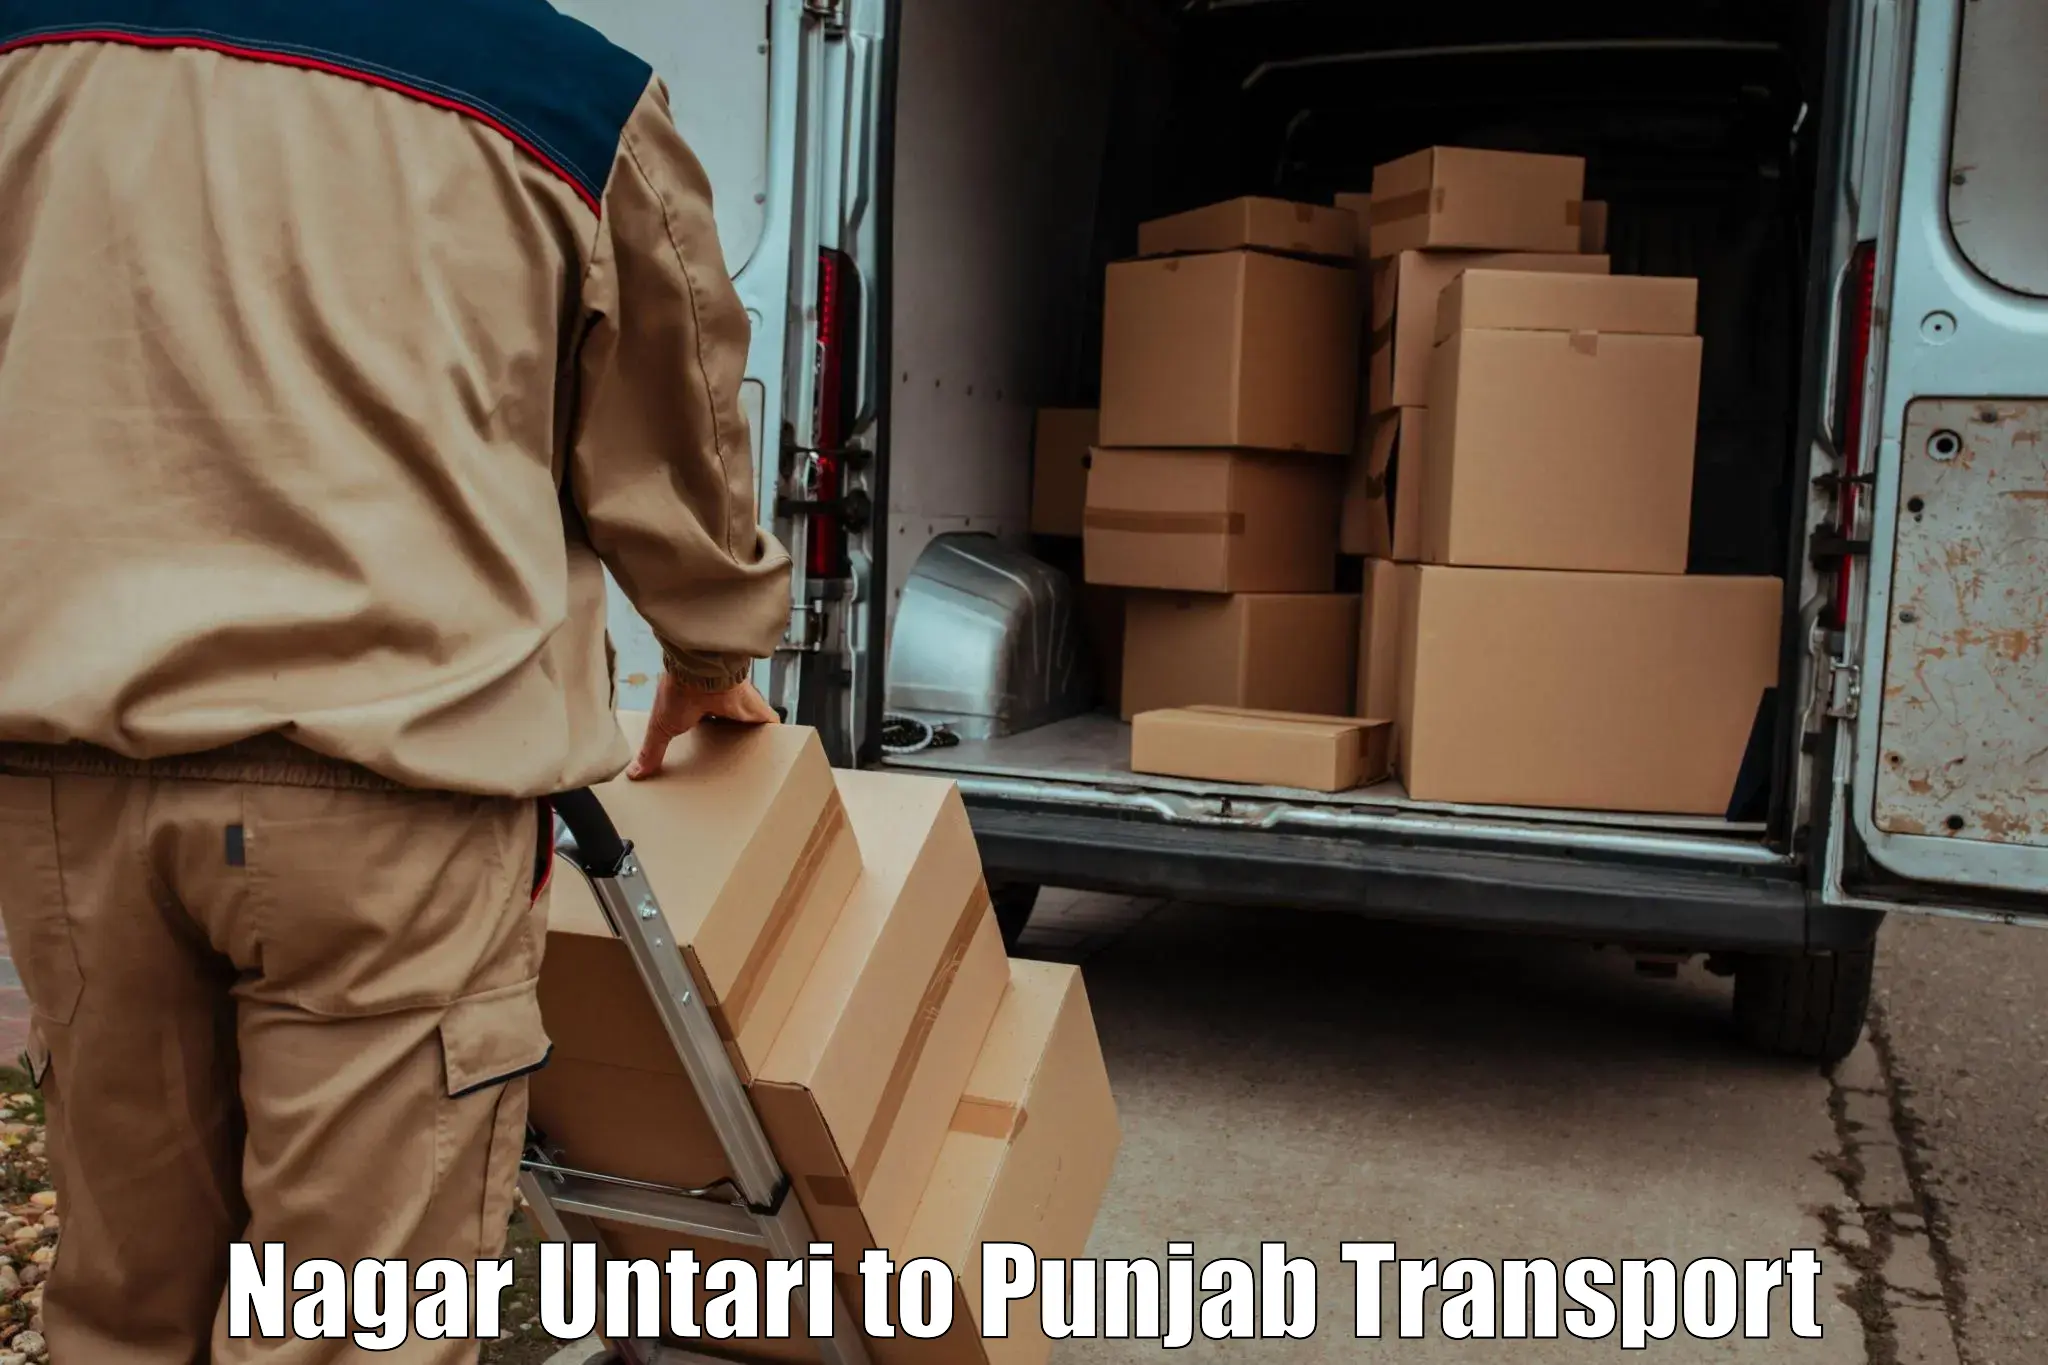 Transportation solution services Nagar Untari to Raikot